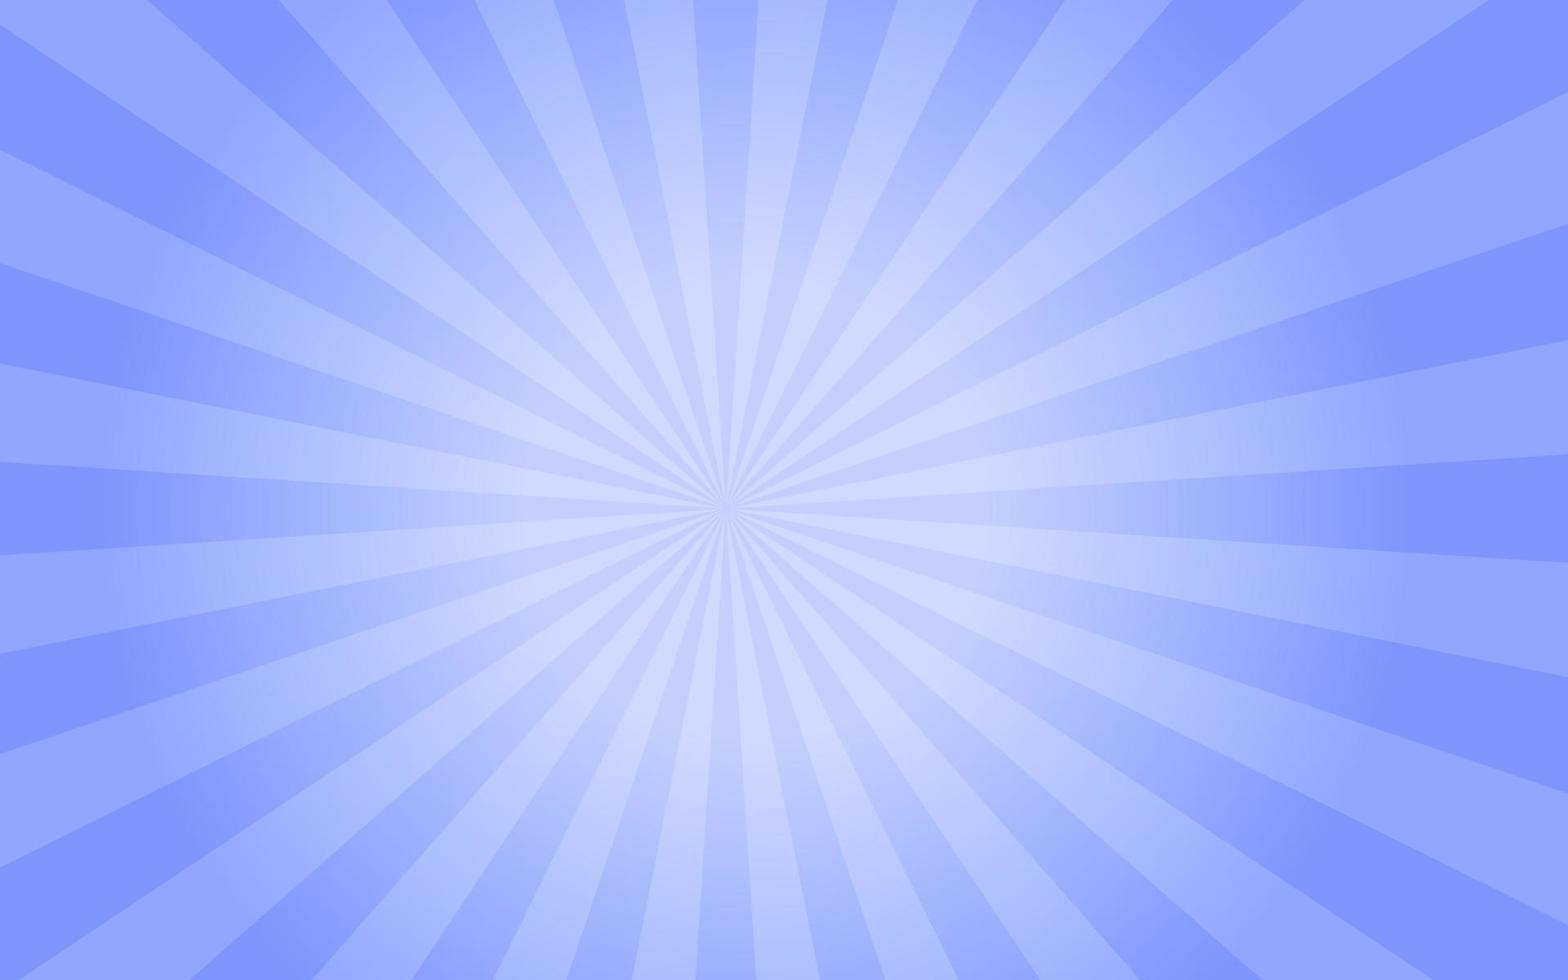 rayos de sol estilo retro vintage sobre fondo azul, fondo de patrón de rayos de sol. rayos ilustración de vector de banner de verano